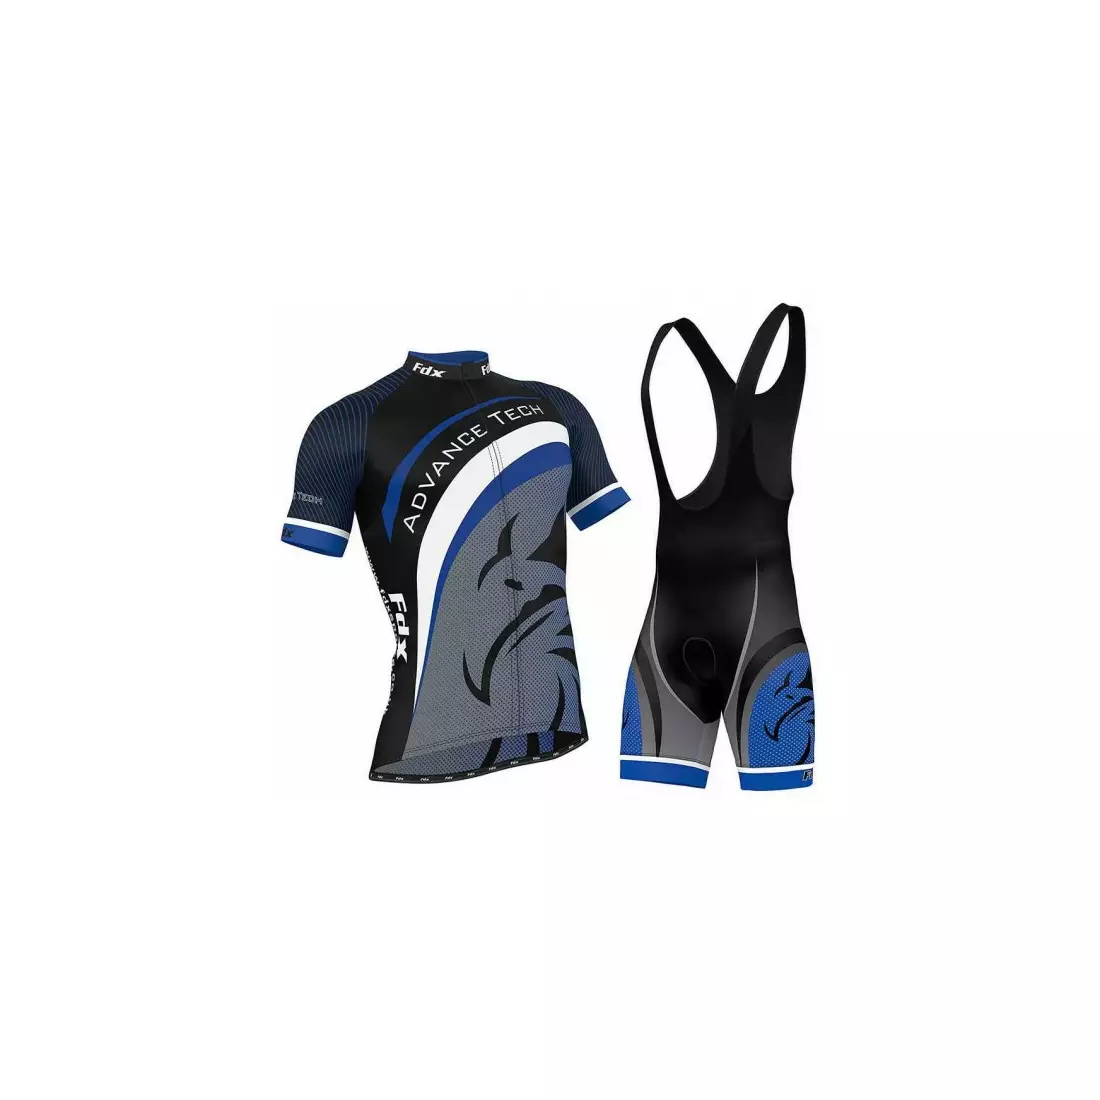 Cyklistický set FDX 1060: cyklistický dres + náprsníkové šortky s vsadkou, modrá